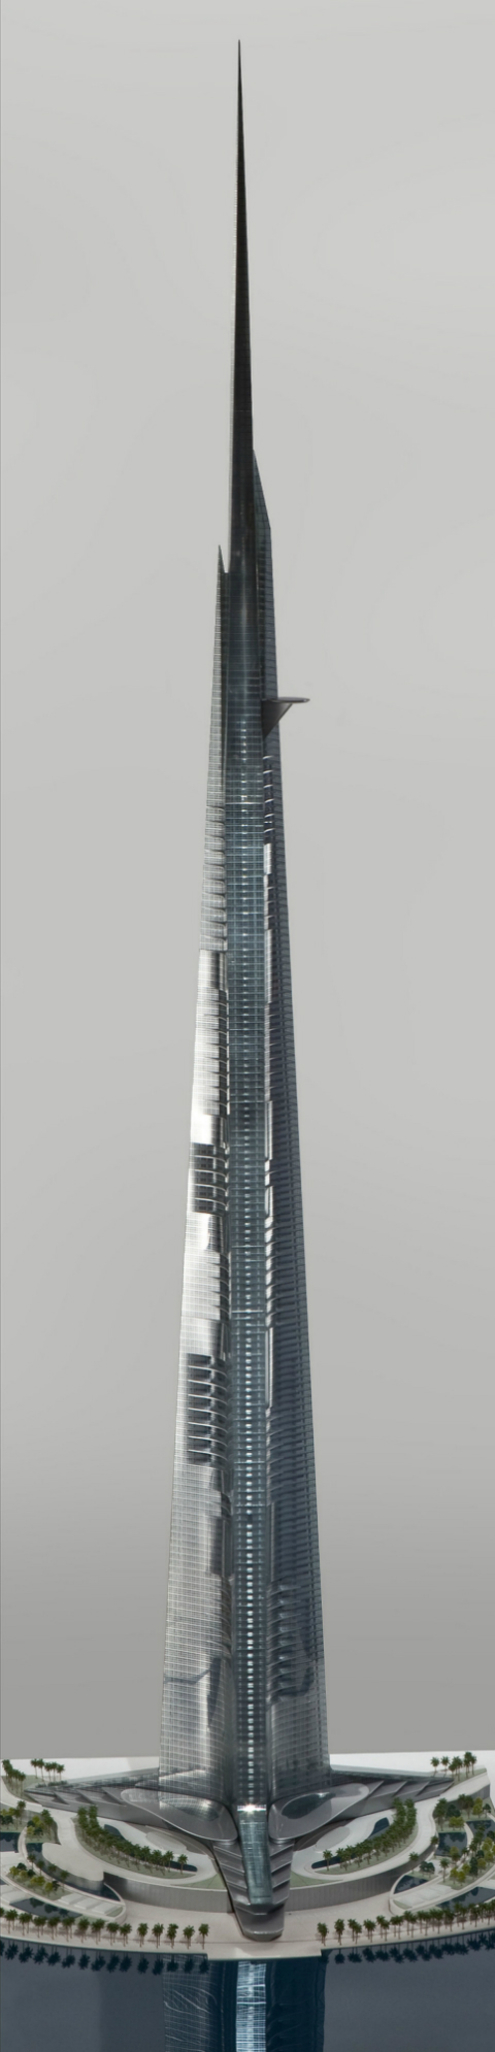 Арабы возведут самый высокий небоскреб в мире - 1001 метр!